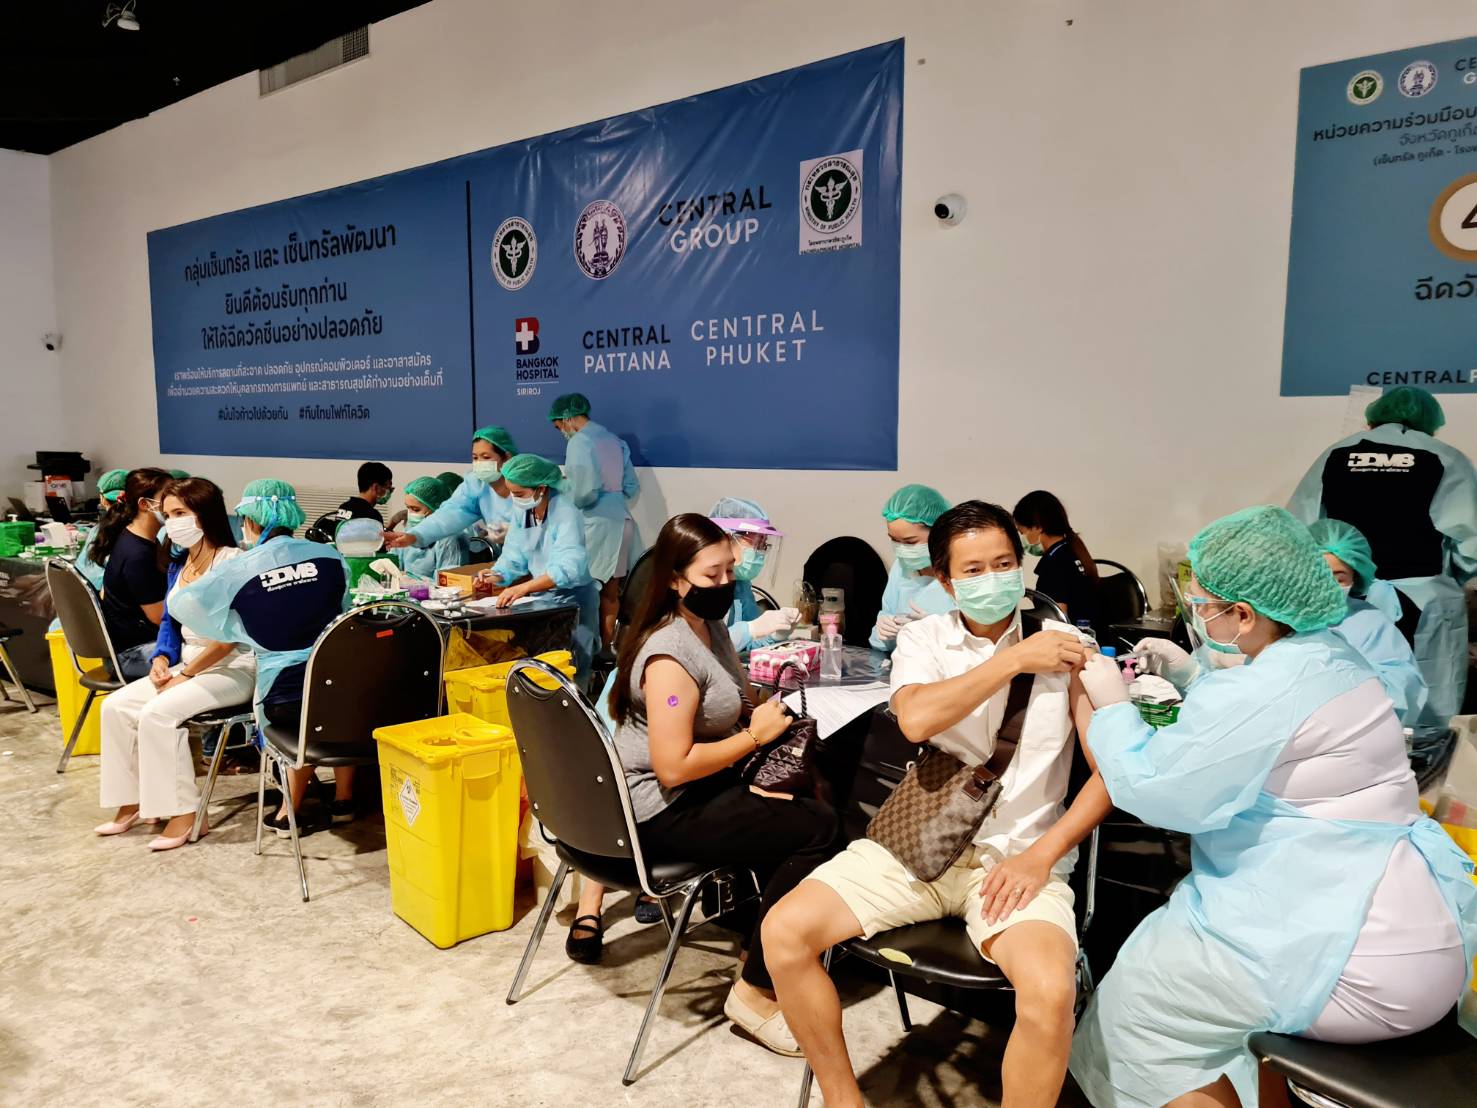 “เซ็นทรัล ภูเก็ต” นำร่องเป็นศูนย์การค้าแห่งแรกในไทย สร้างภูมิคุ้มกันหมู่ได้สำเร็จ พนักงานรับวัคซีนครบ 2 เข็มแล้ว 85% 